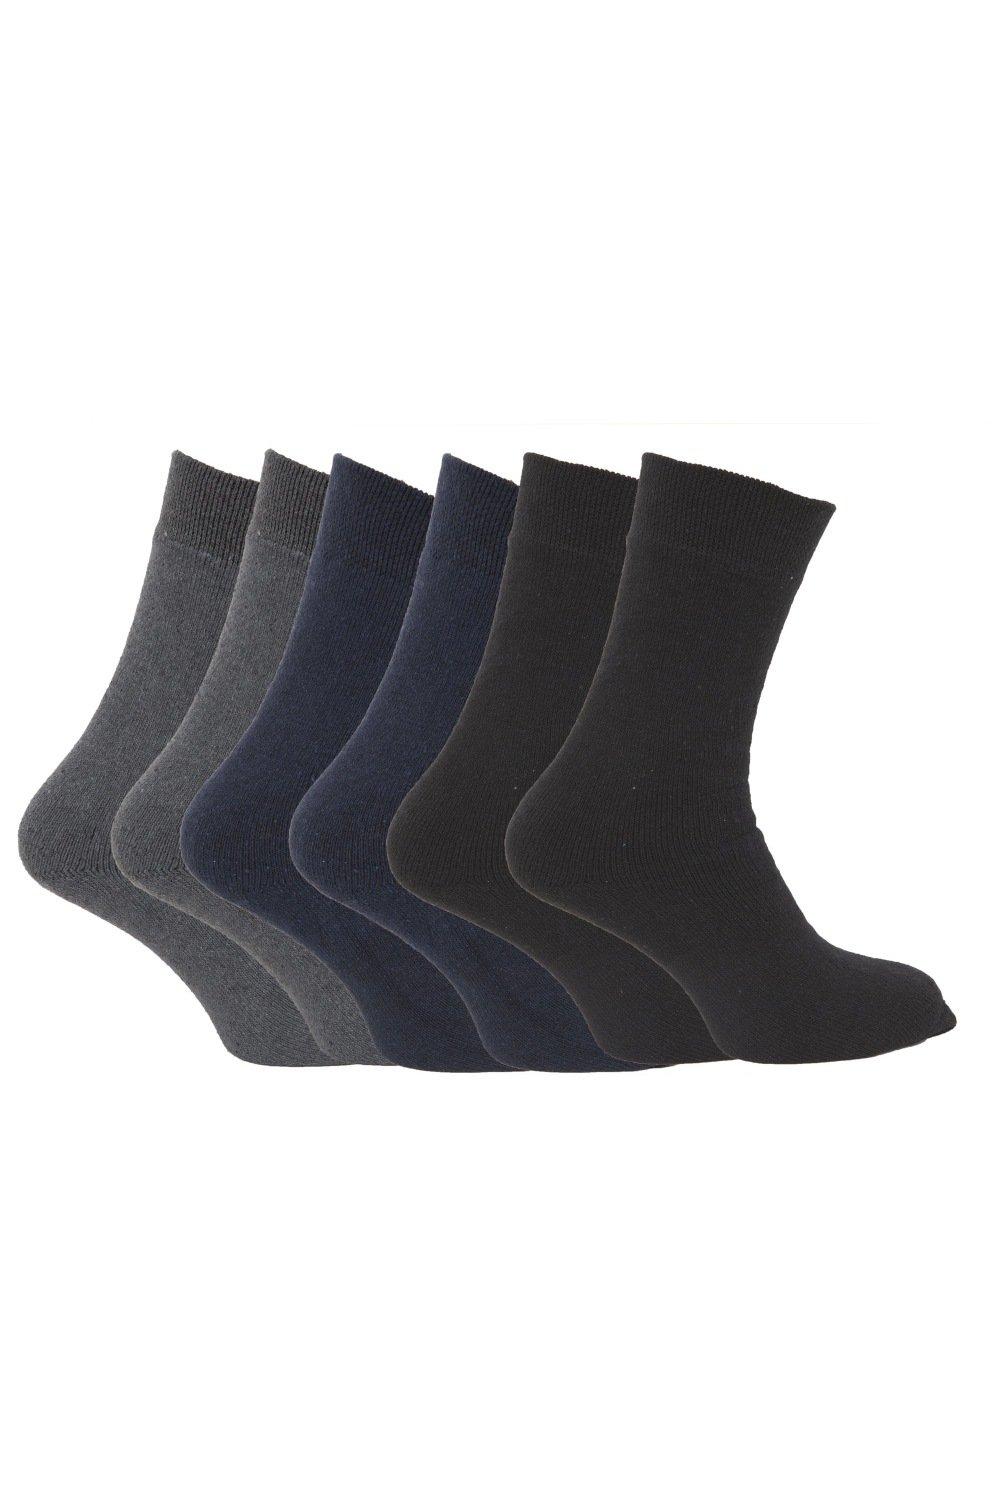 Premium Quality Multipack 1.9 Tog Thermal Socks (Pack Of 6)